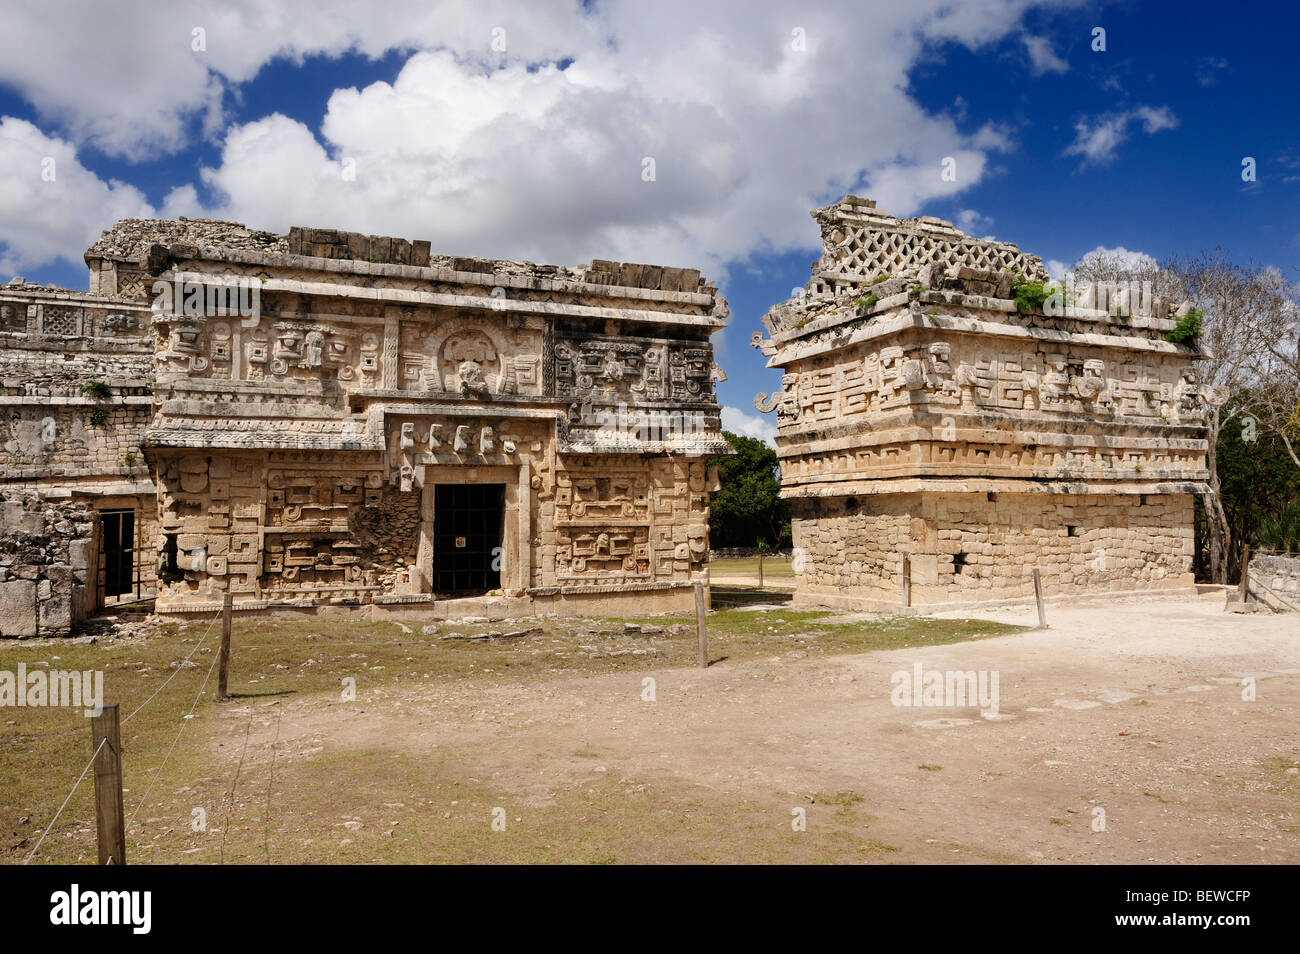 La Iglesia (church) in the Las Monjas complex at the Maya ruin site of  Chichen Itza, Yucatan, Mexico Stock Photo - Alamy